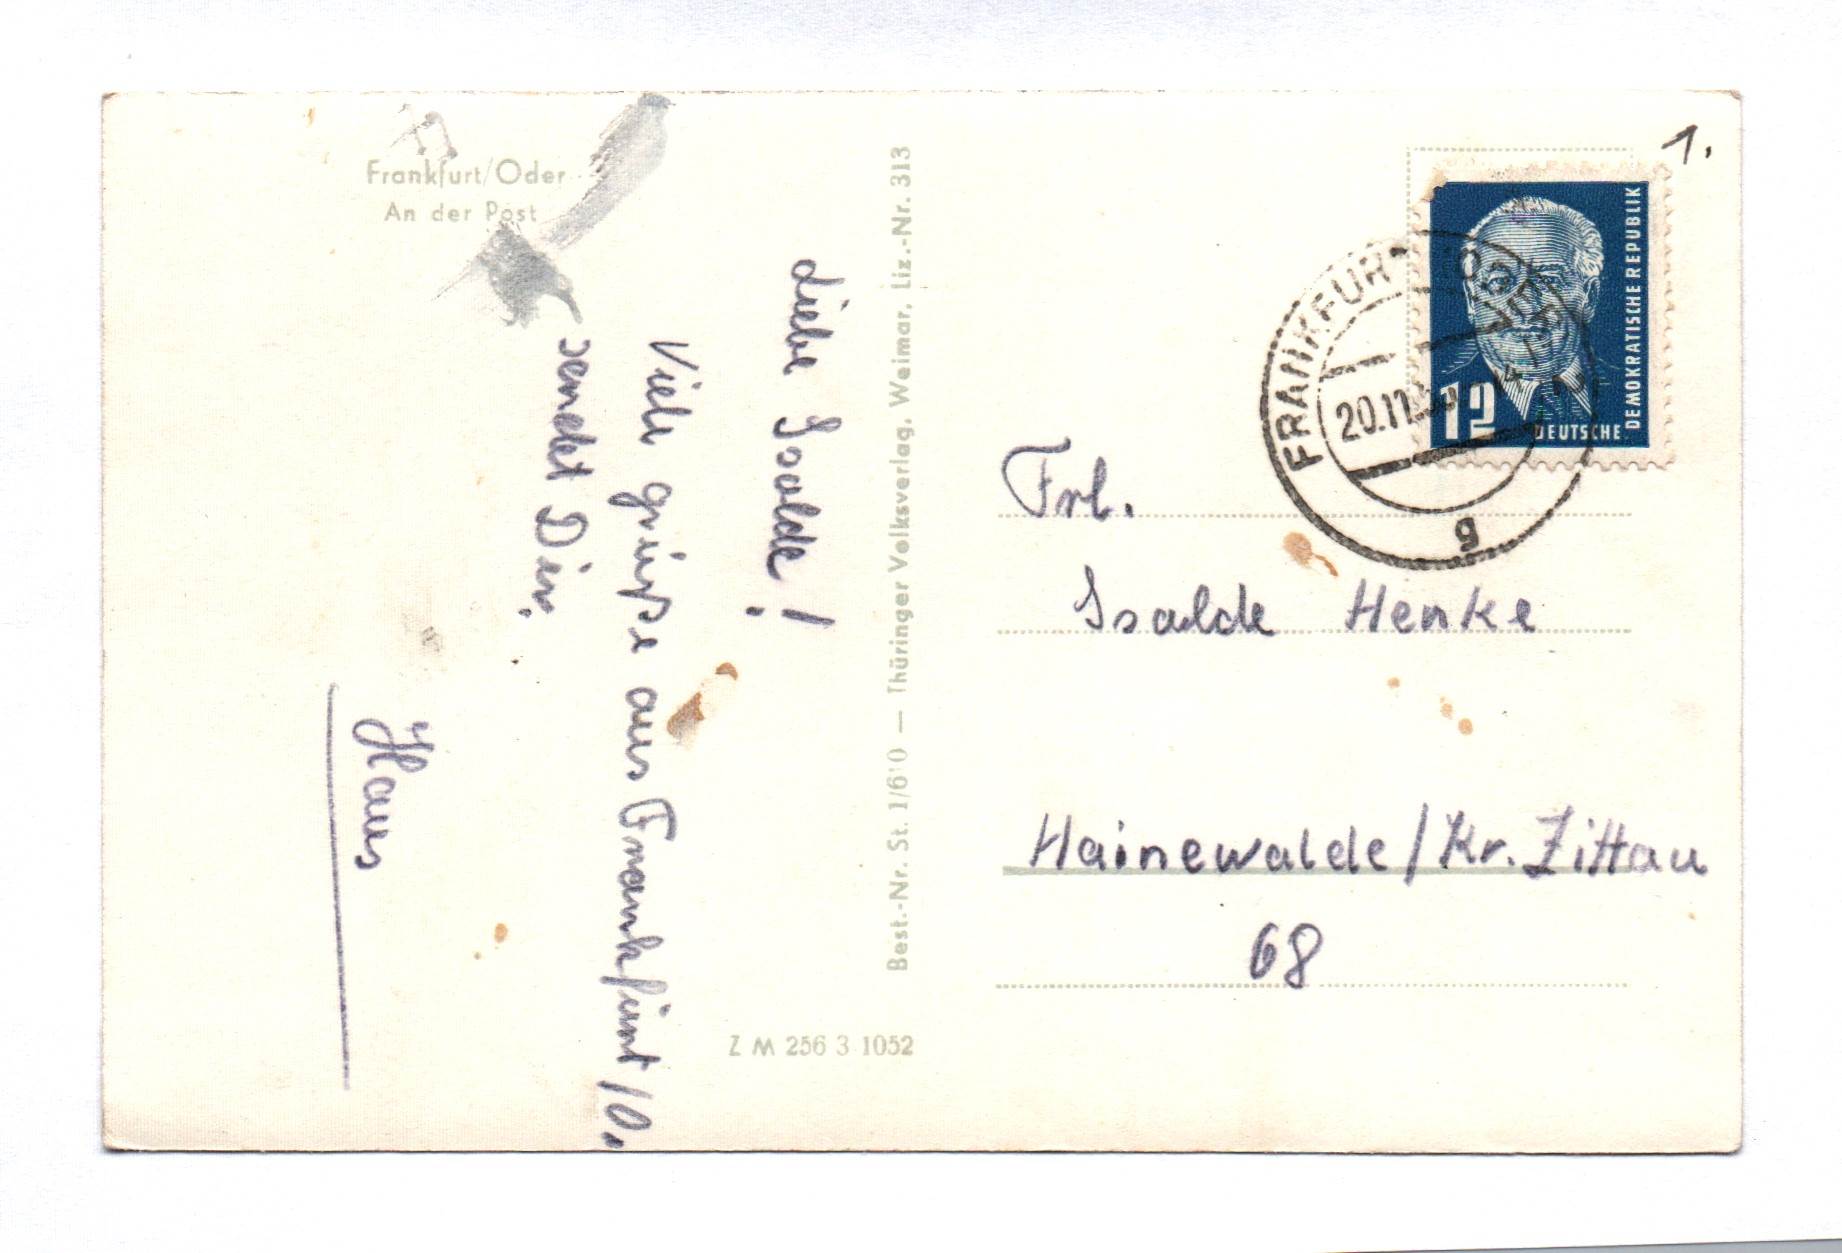 Ak Frankfurt Oder An der Post DDR 